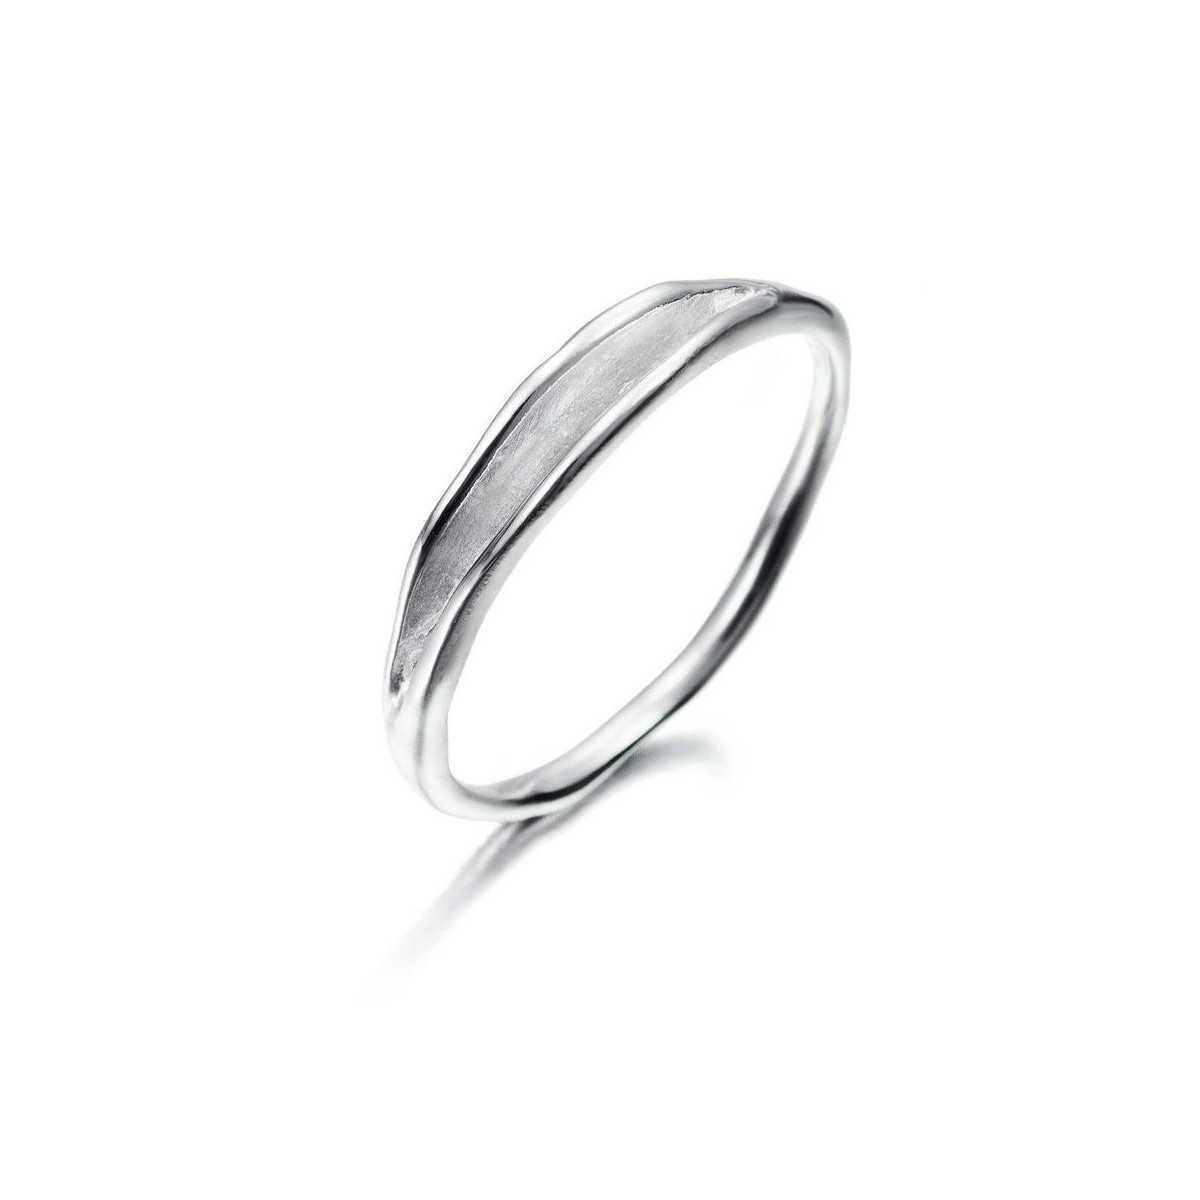 ODYSSEY Ring in Silver.